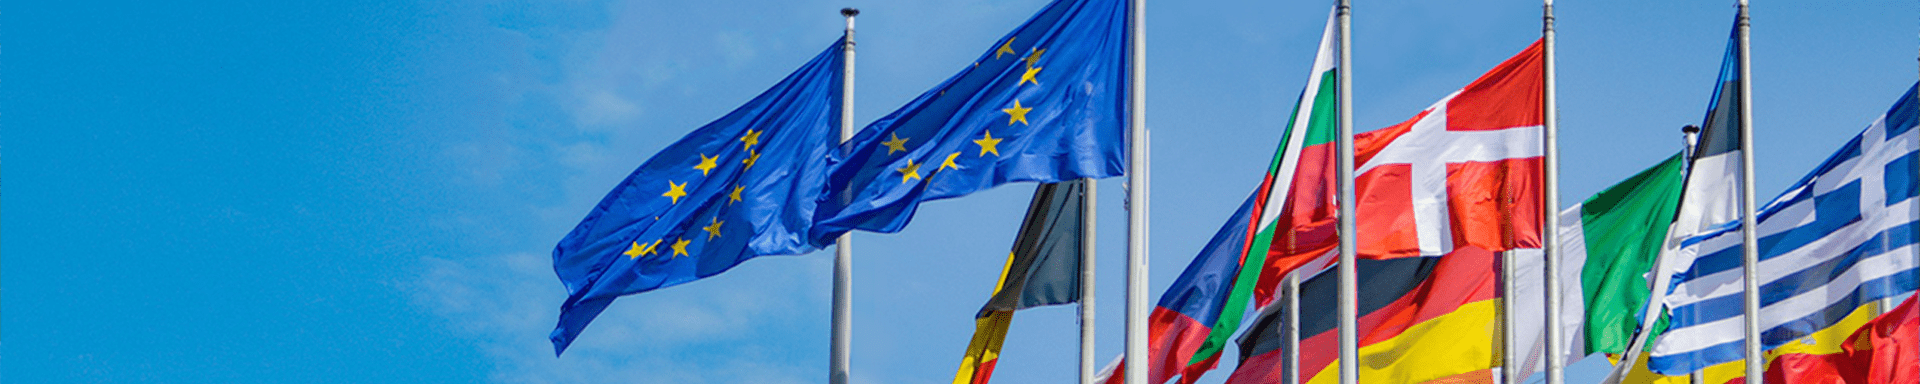 Přečtete si více ze článku Občanem EU část druhá: Ekonomické přínosy, diplomatická síla i nové volební právo